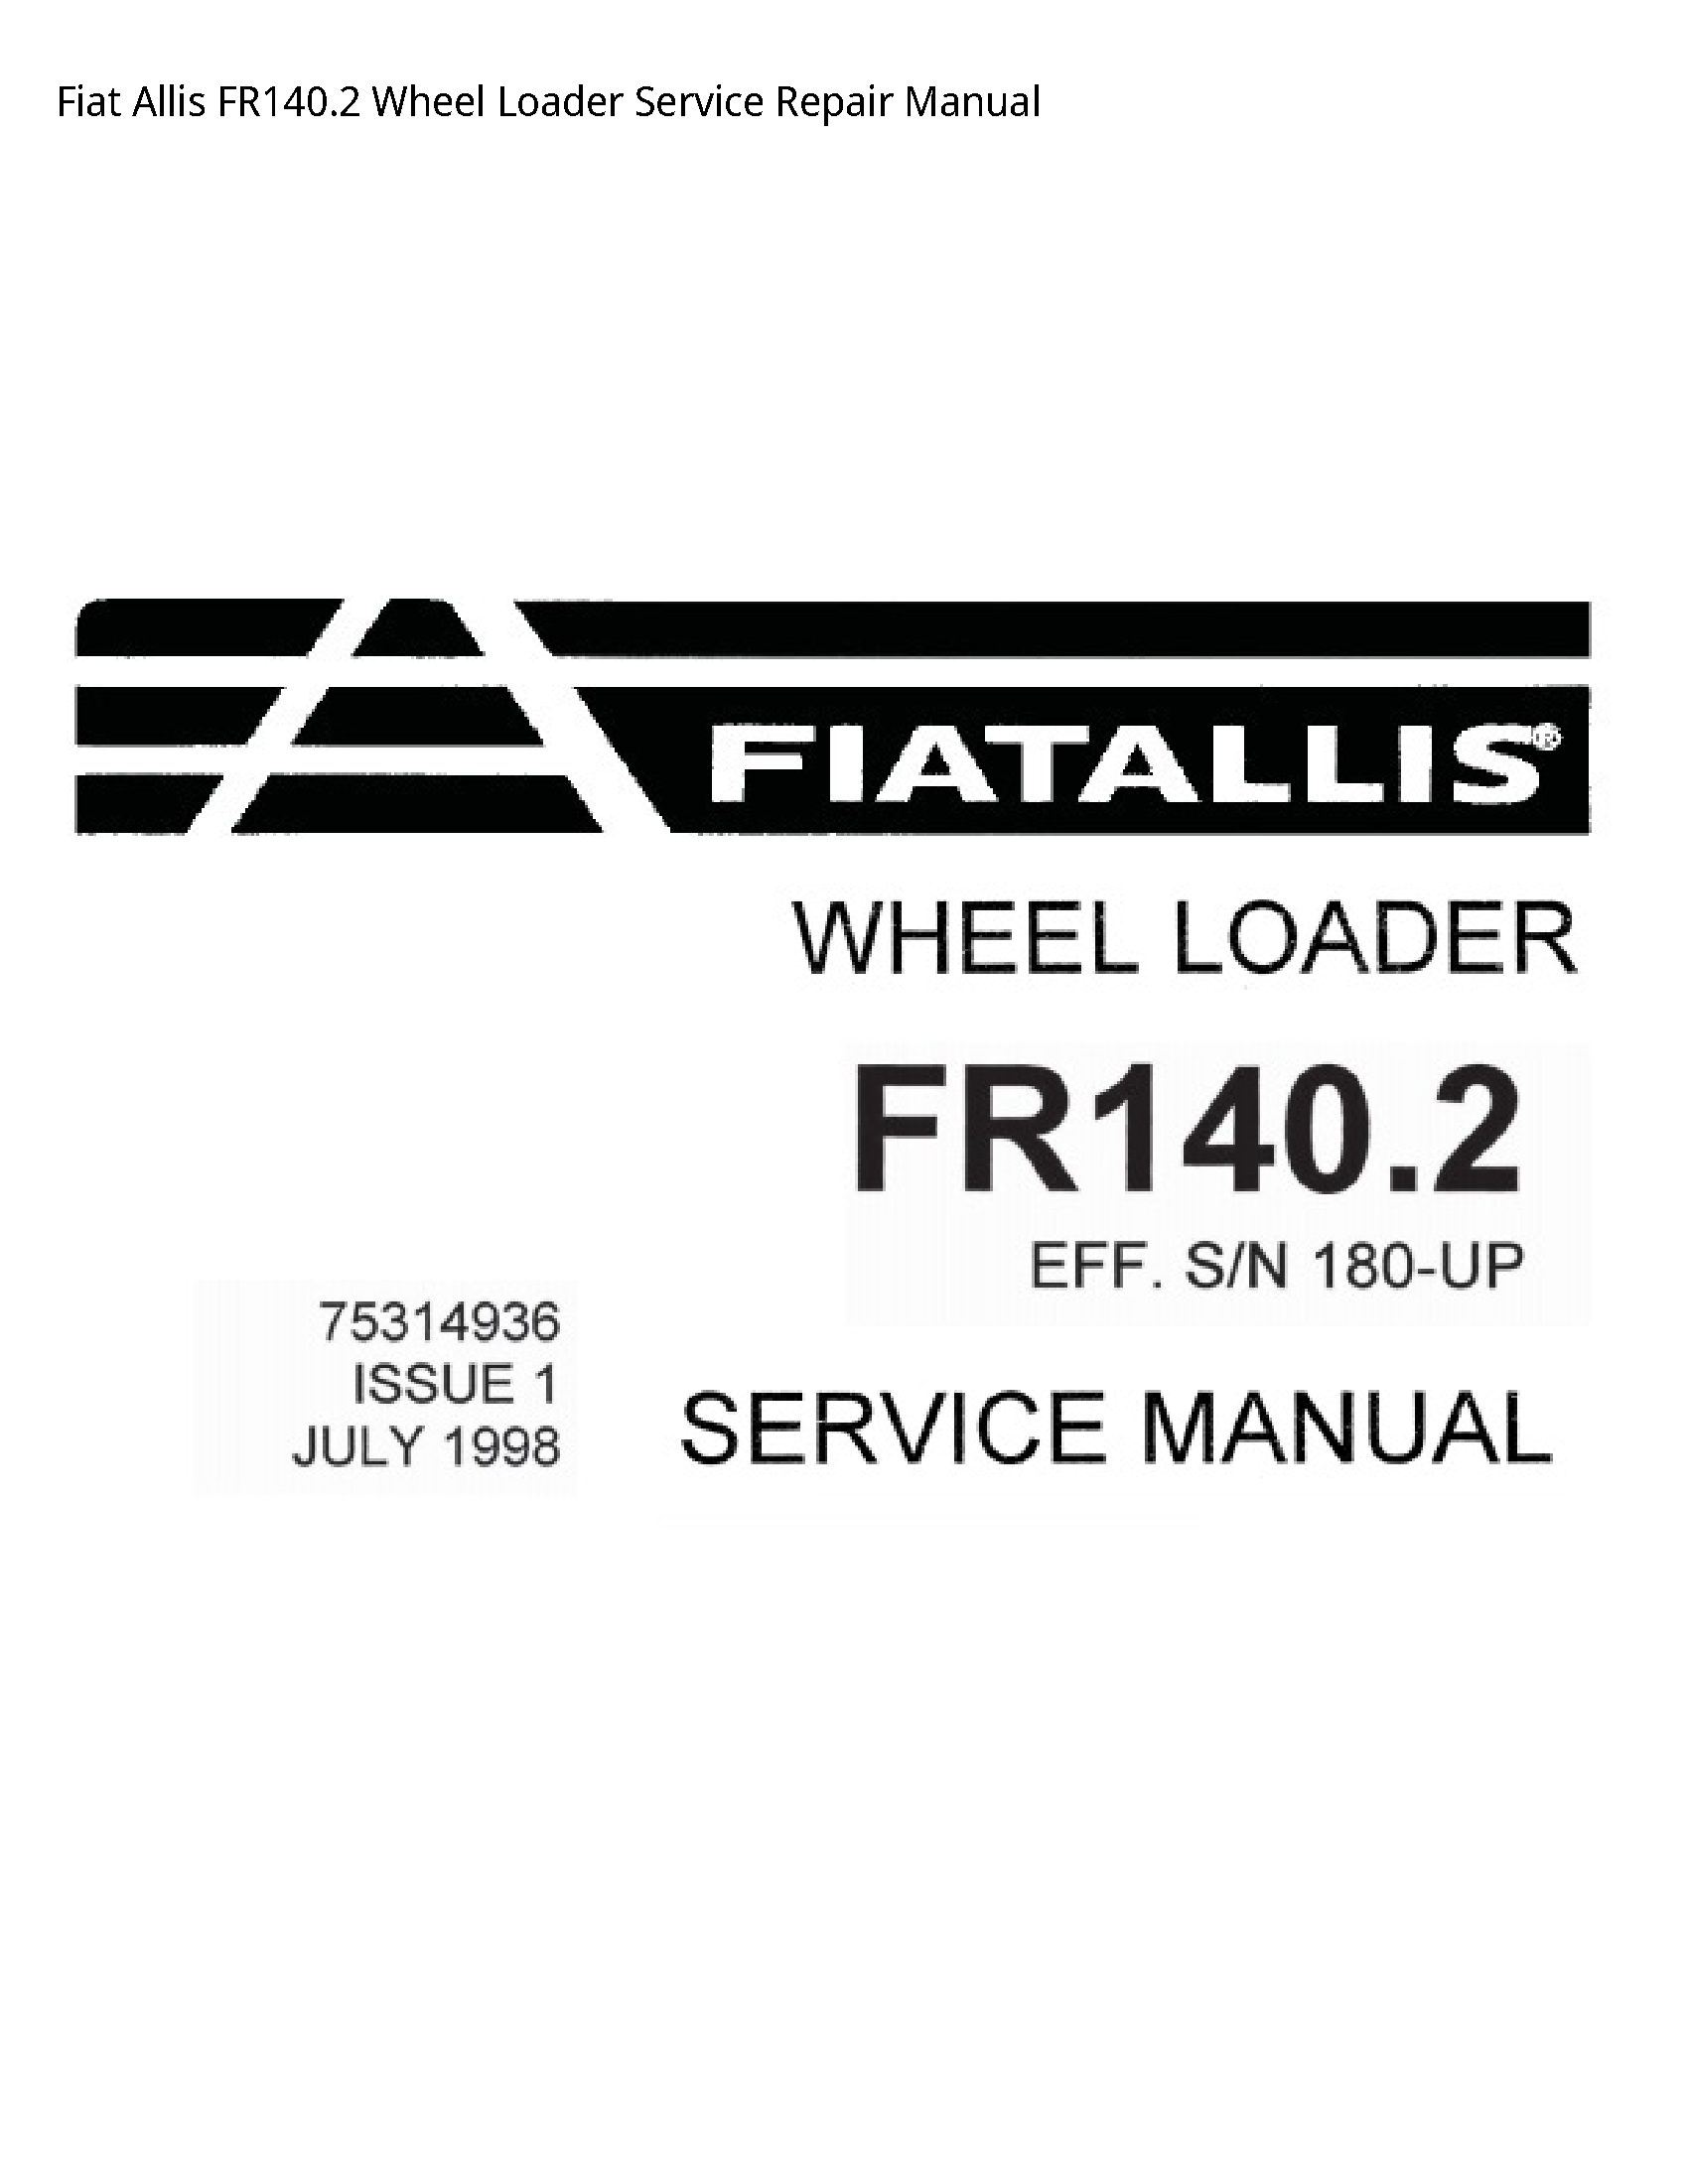 Fiat Allis FR140.2 Wheel Loader manual